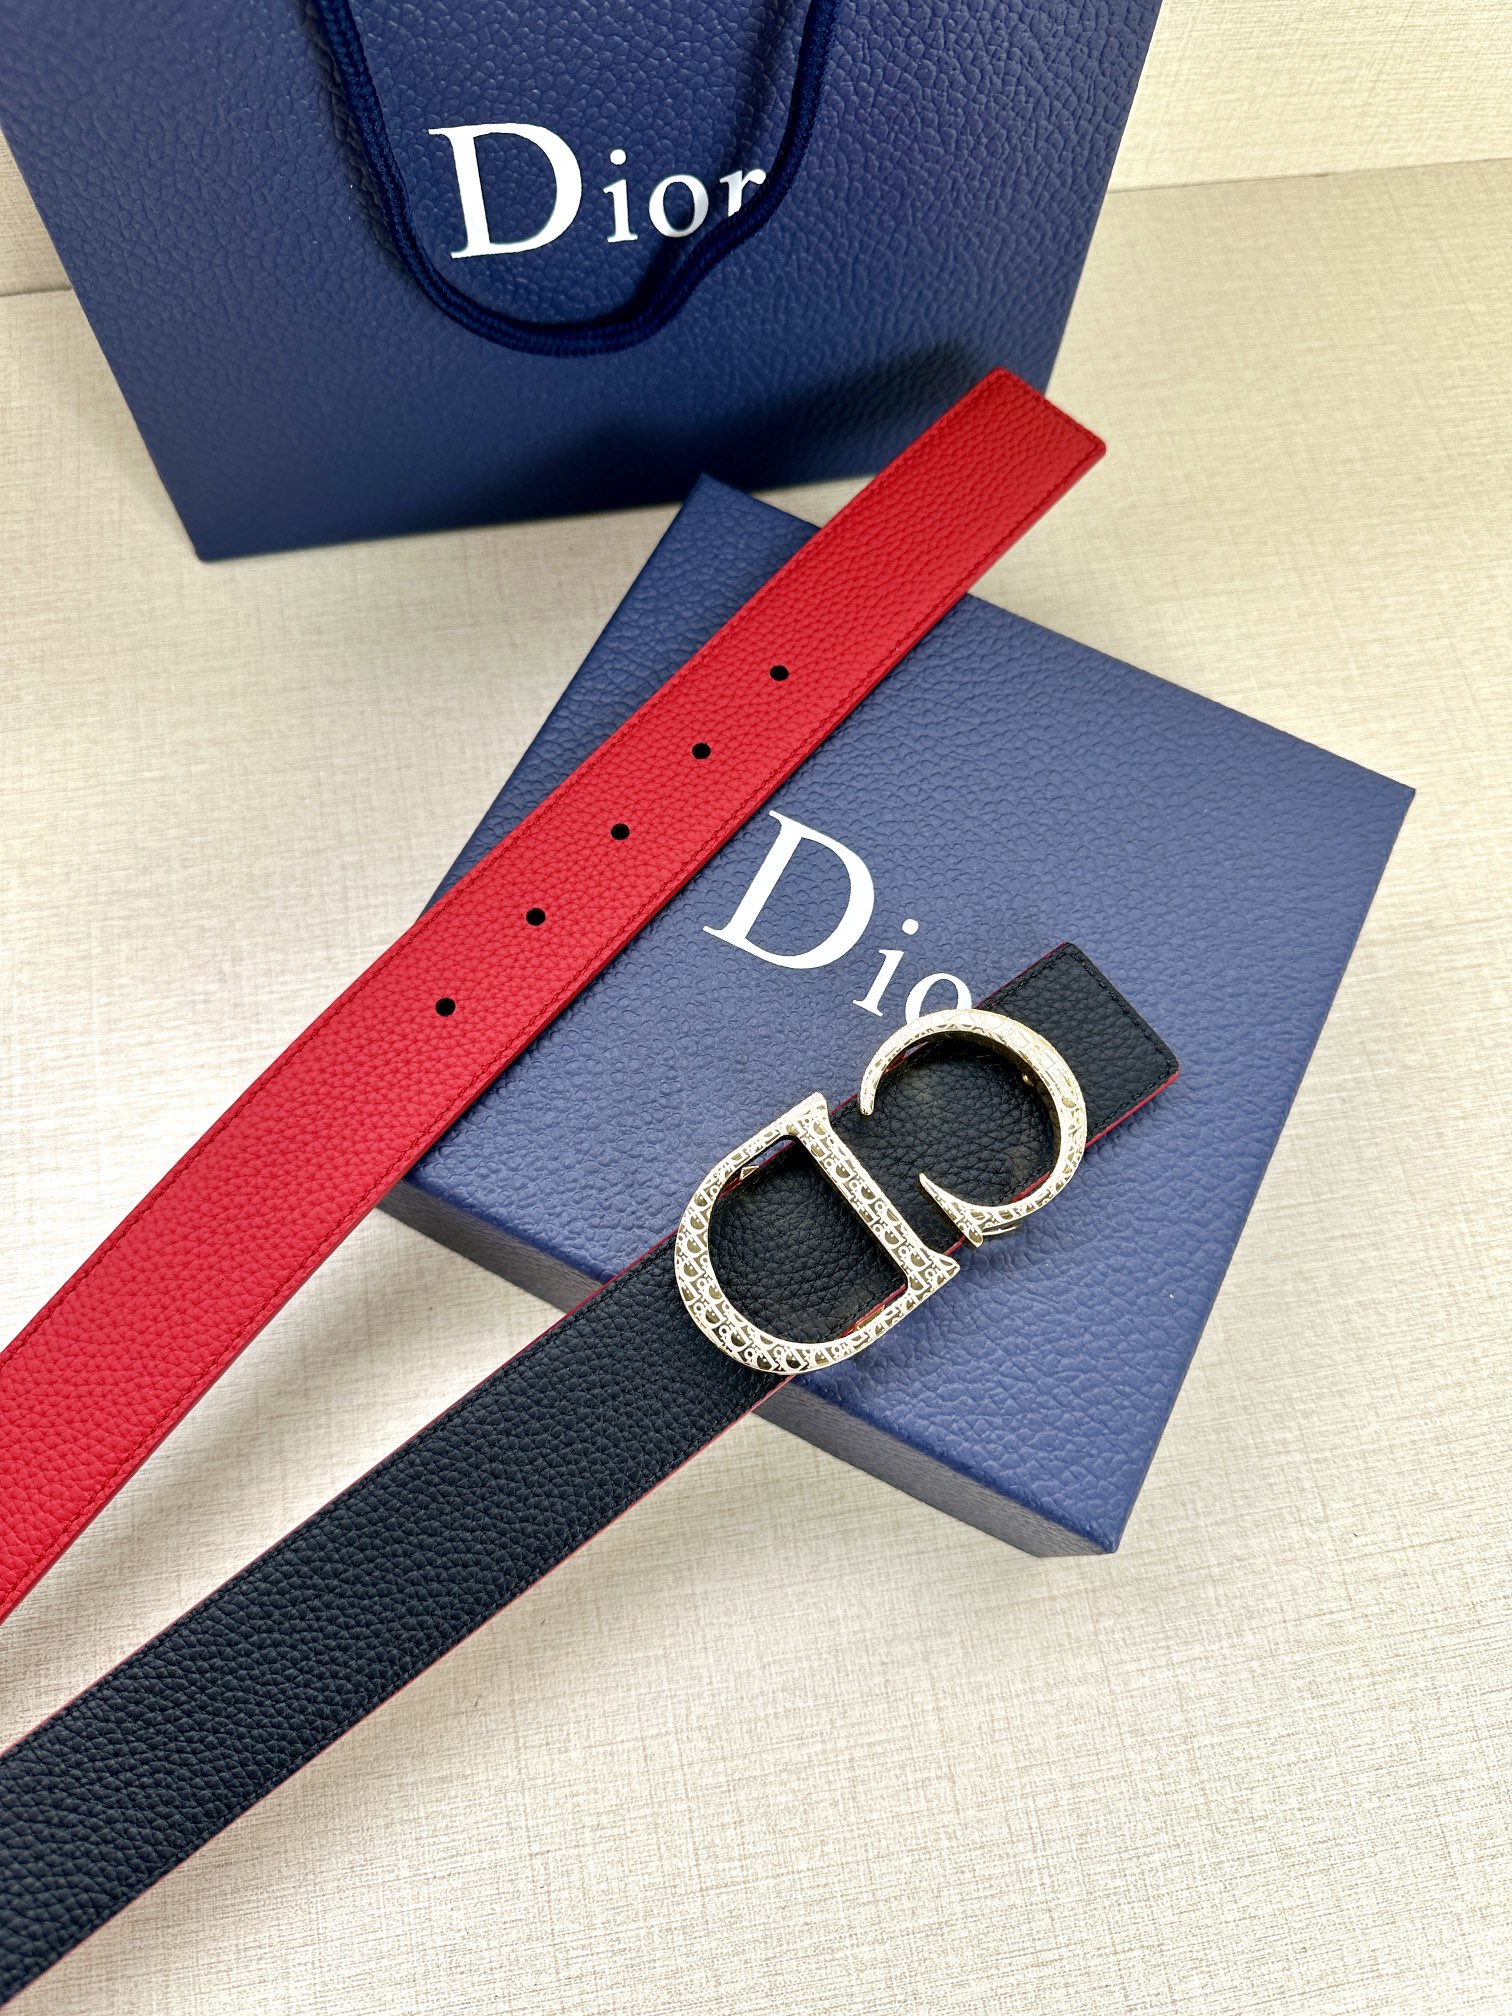 dior red black belts